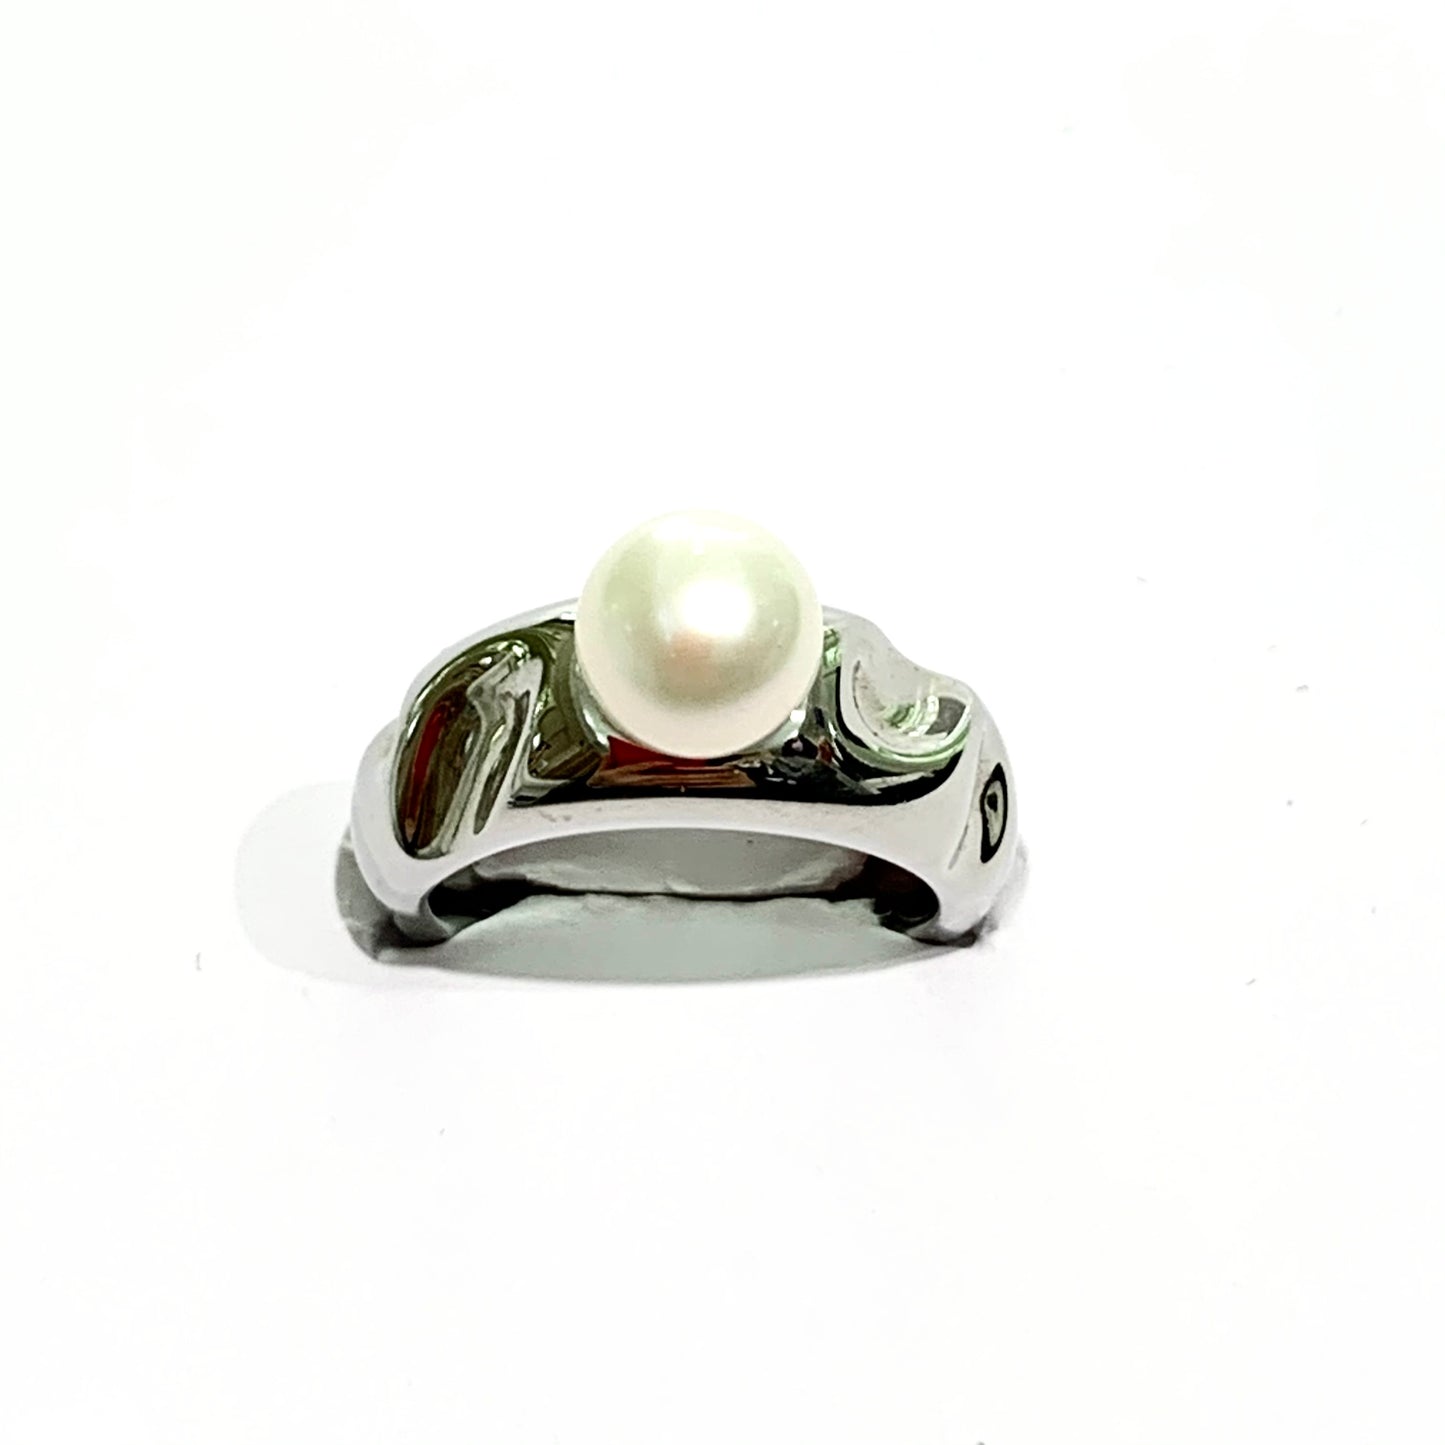 Anello in bijoux con perla coltivata sulla parte superiore.  Grandezza perla 0,7 cm.  Marchio Morellato.  Disponibile in più misure.